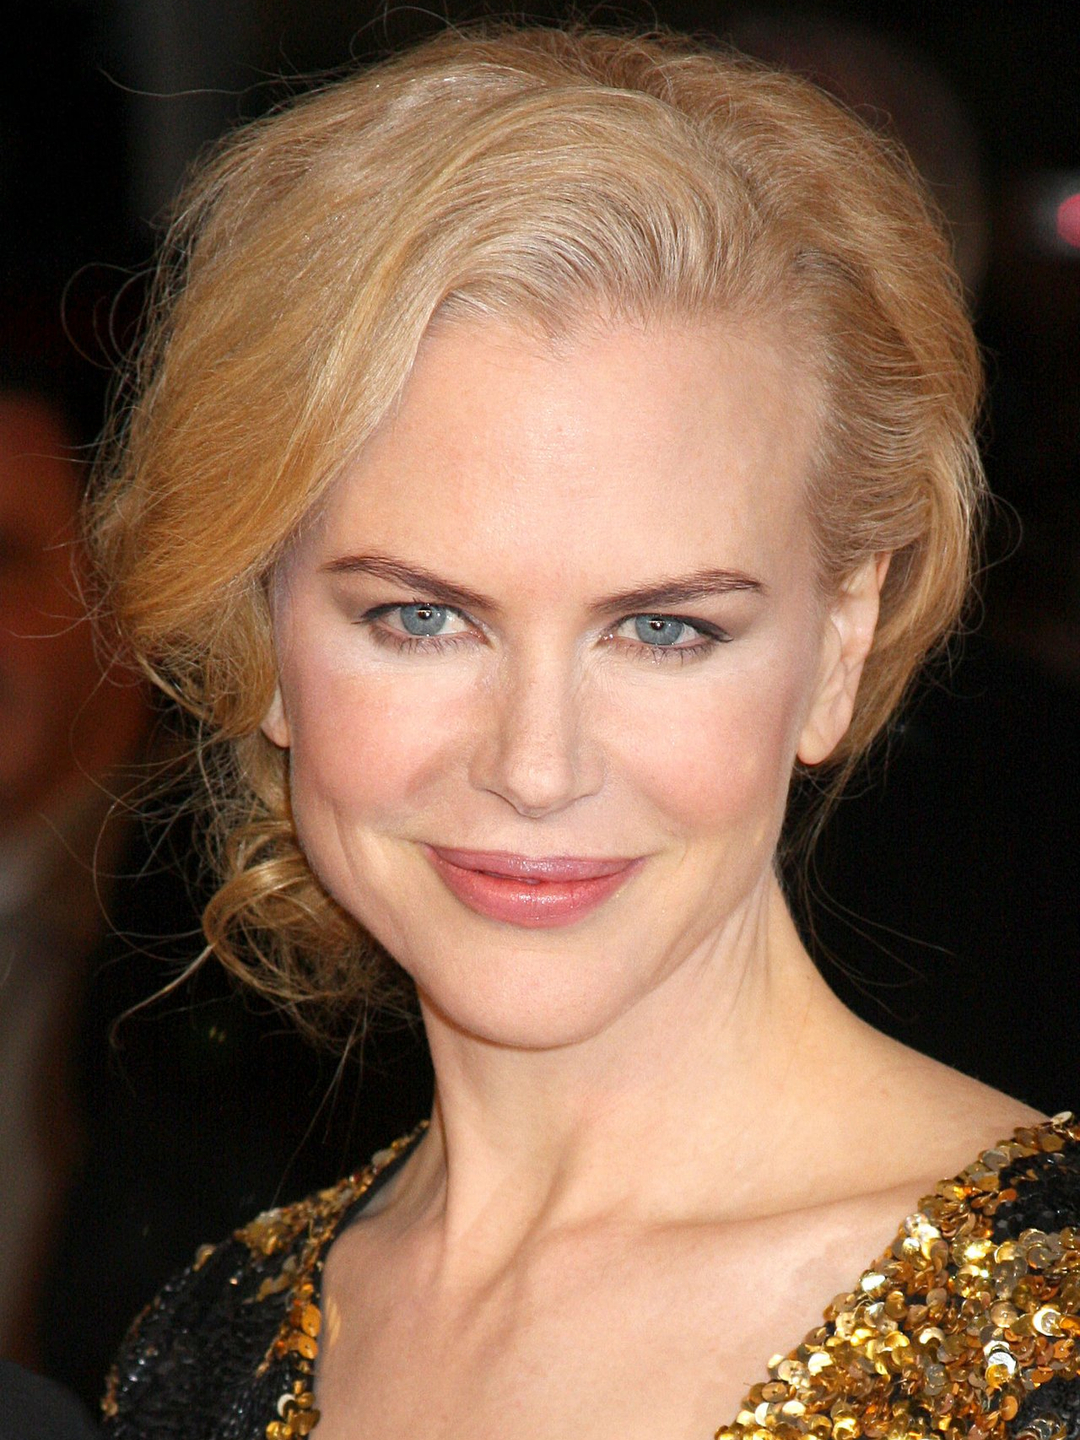 Nicole Kidman relationship